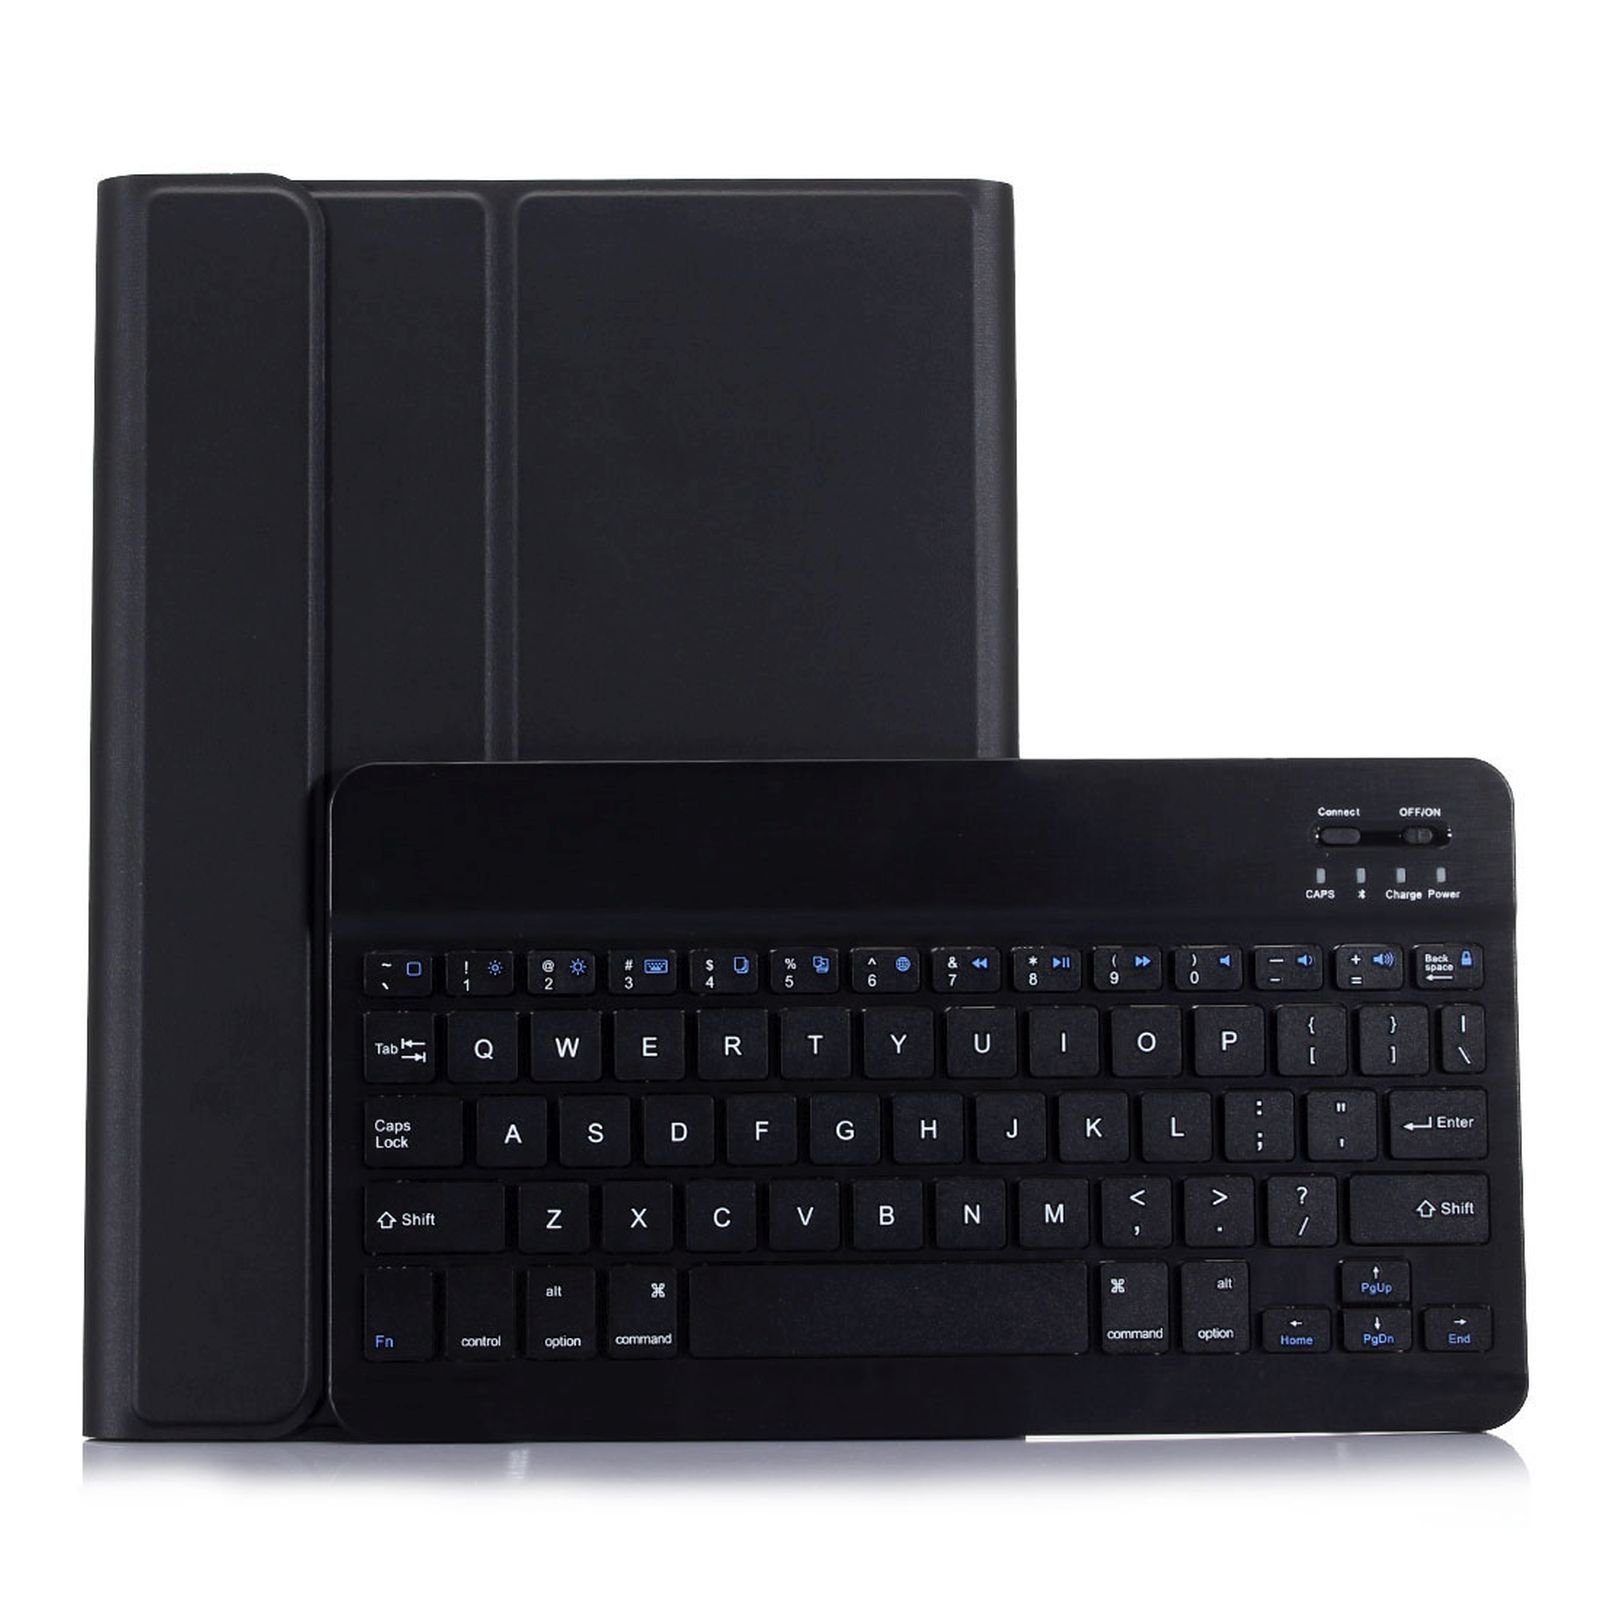 Lobwerk Tablet-Hülle 2in1 Set (Hülle + Tastatur) für Samsung Galaxy Tab S Tab S6 SM-T860, Aufstellfunktion, Sturzdämpfung